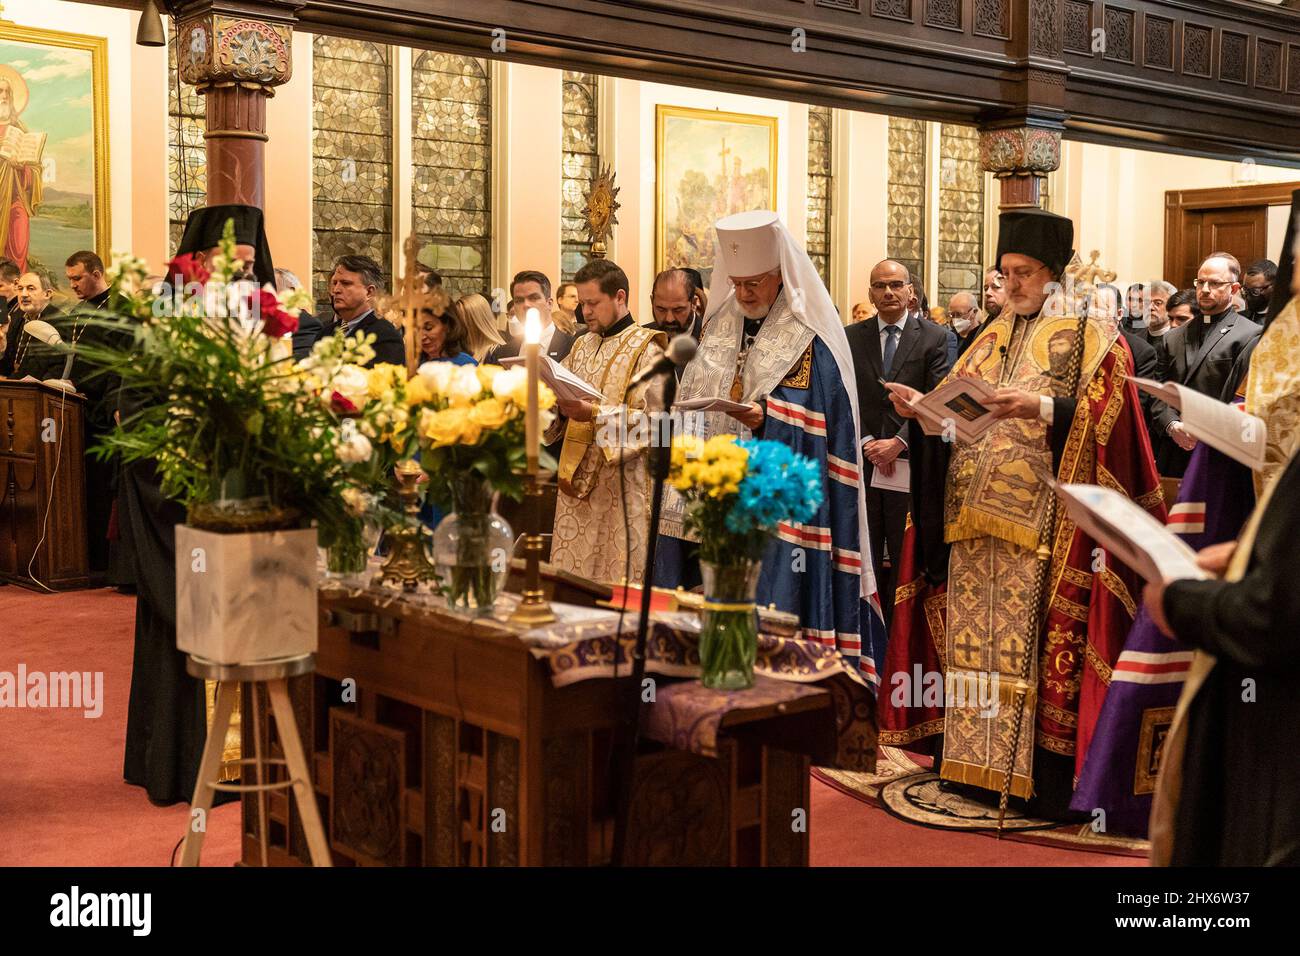 Vienna Priest Wearing Rainbow Vestments